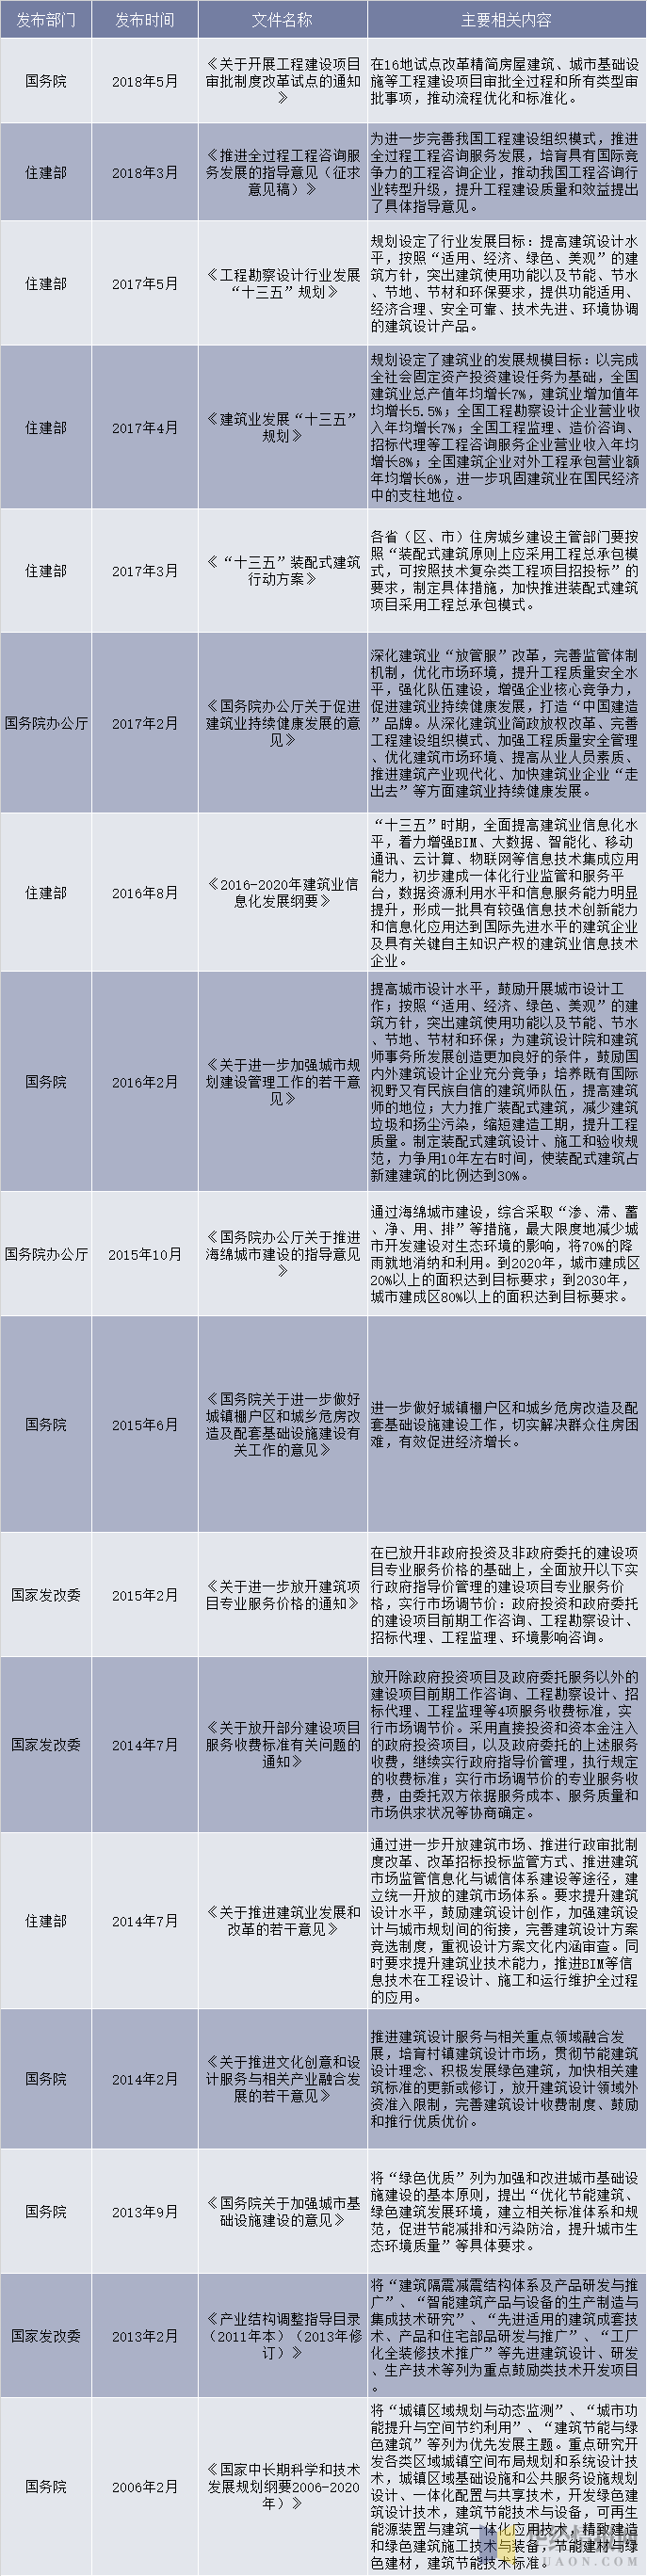 2006-2018年中国建筑设计行业相关政策和法规分析